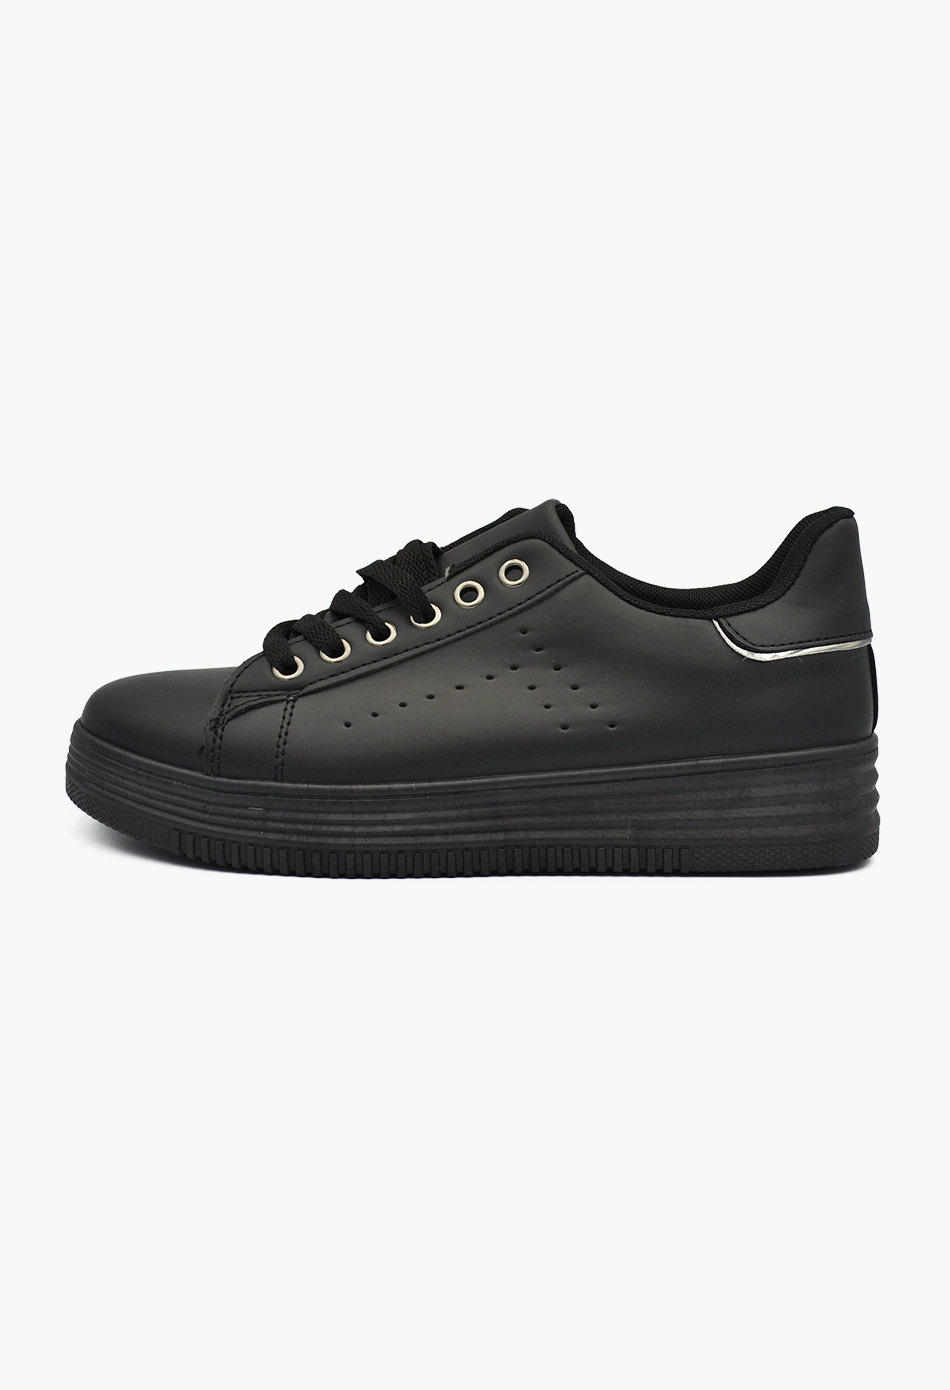 Γυναικεία Flatforms Sneakers Μαύρο / OX2538-black Γυναικεία Αθλητικά και Sneakers joya.gr